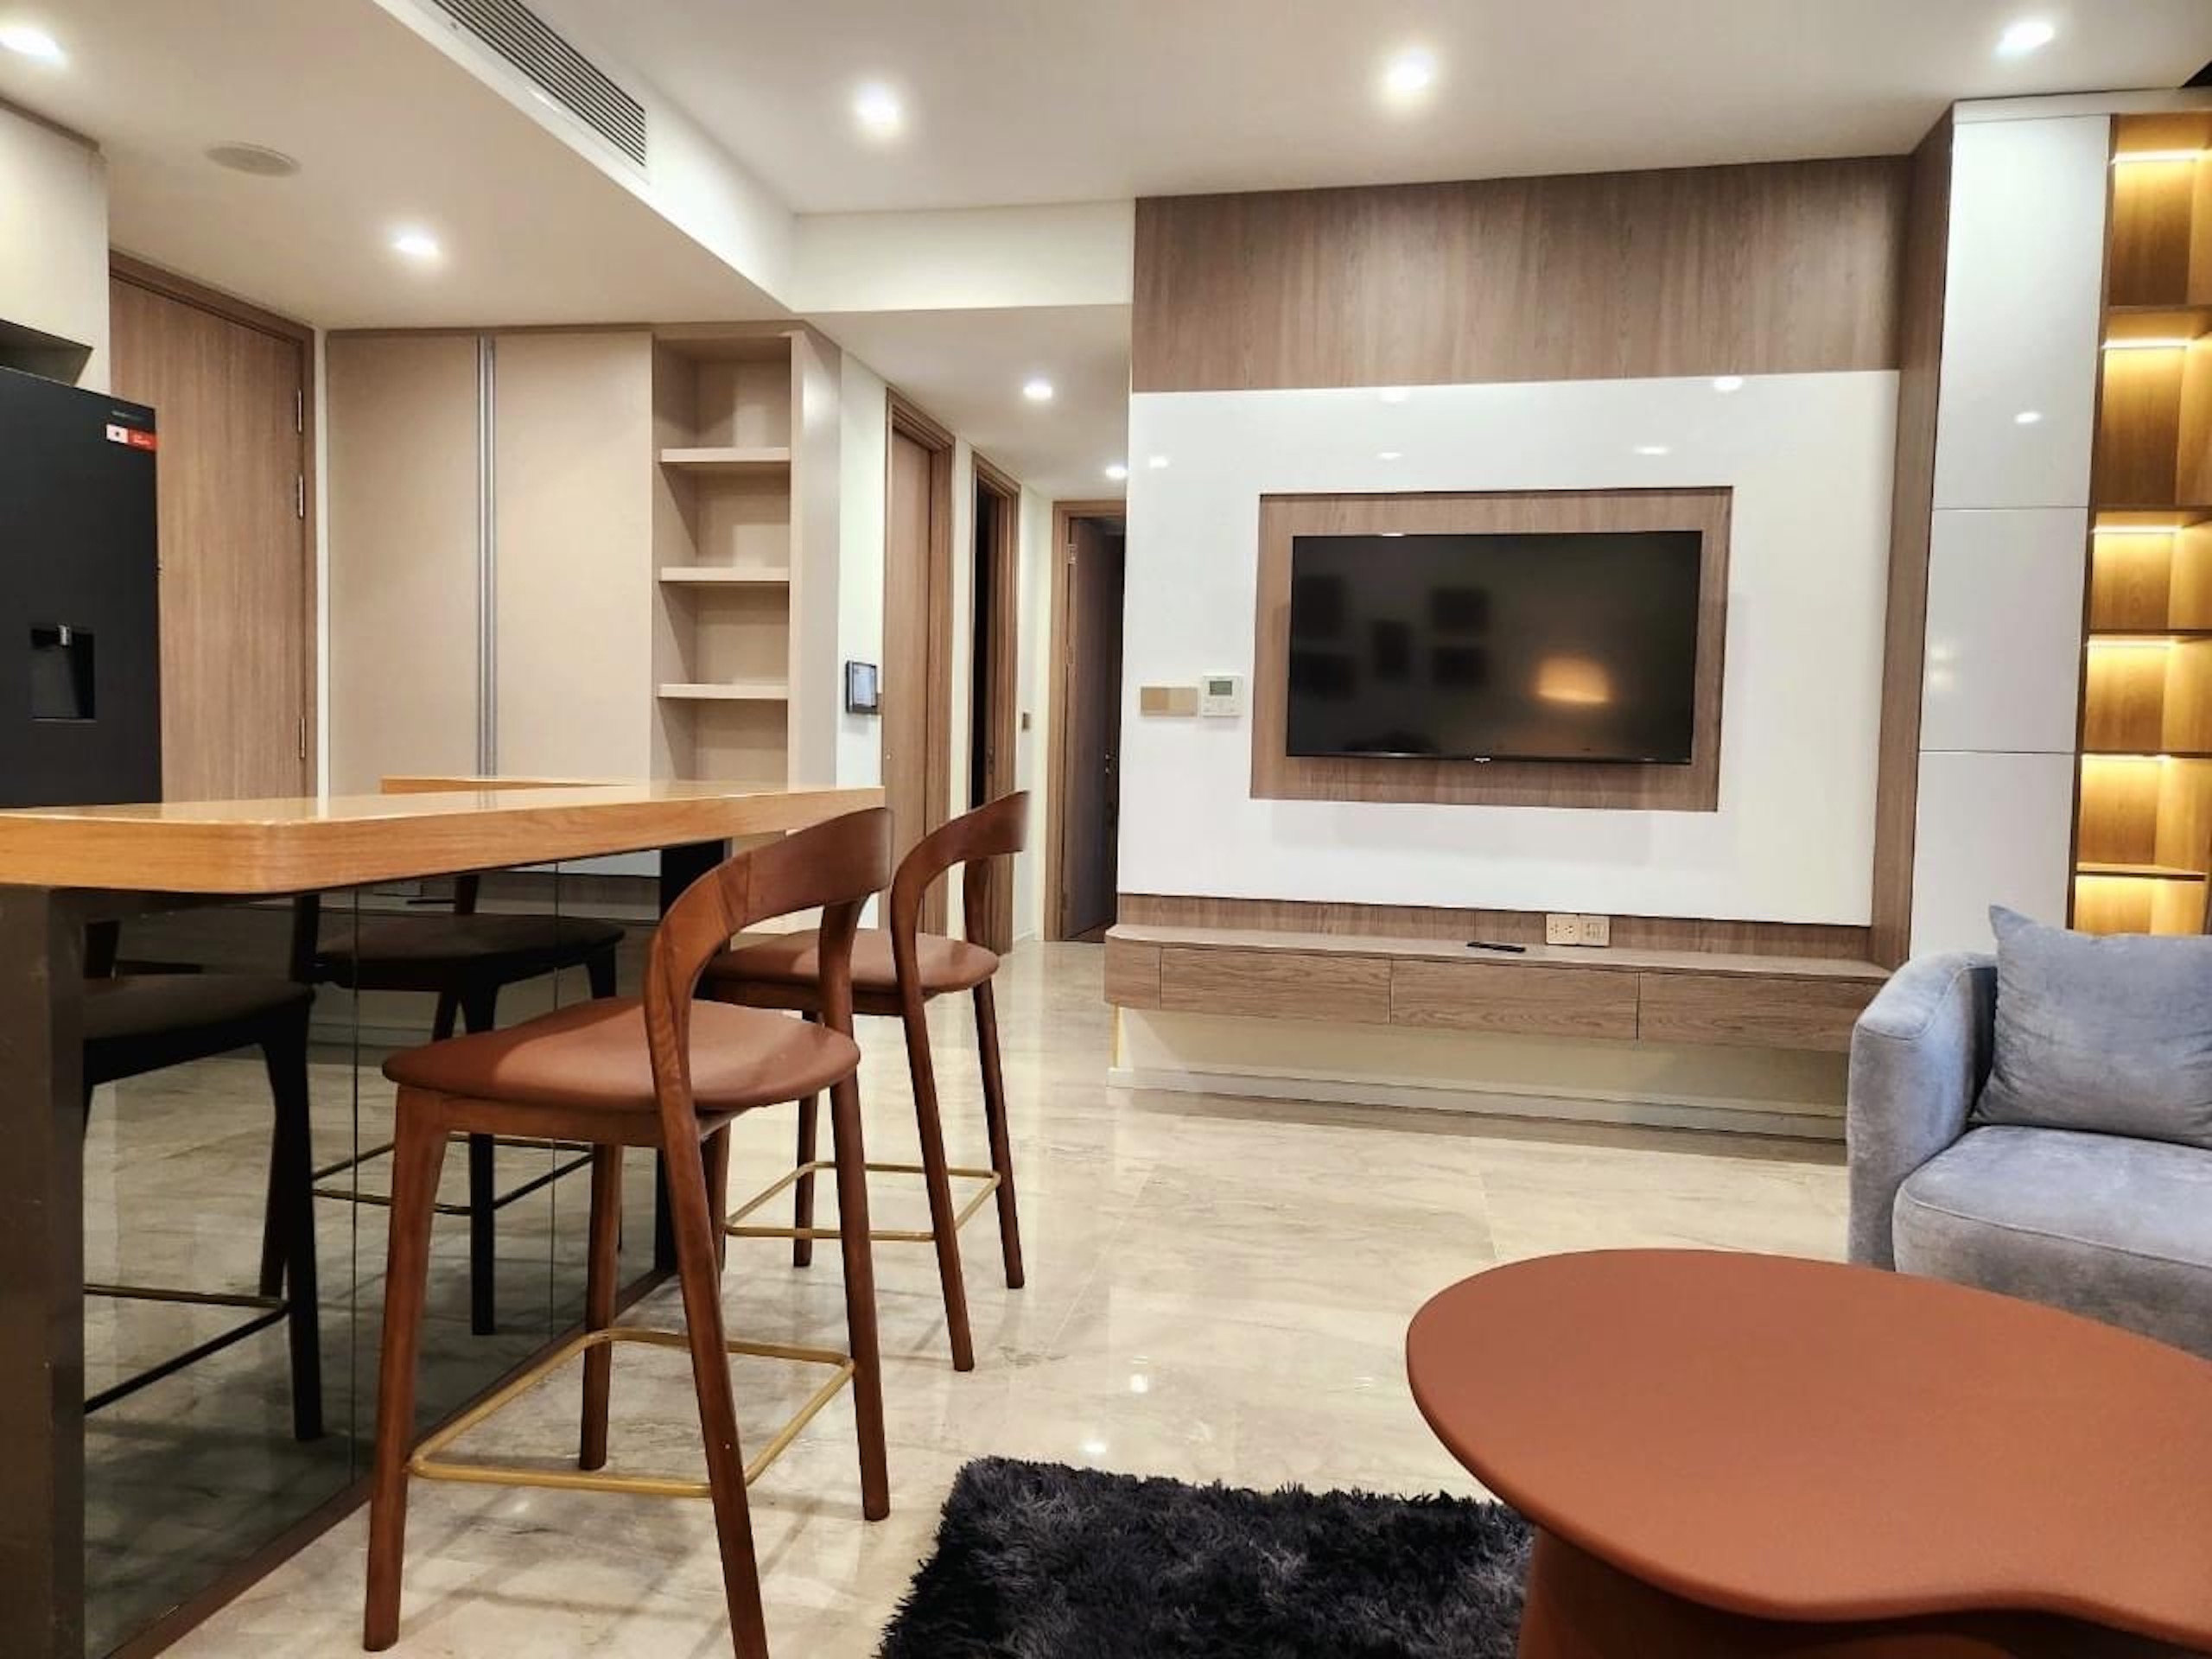 Cho thuê căn hộ 2 phòng ngủ Thảo Điền Green, 84m2, full nội thất cao cấp, view sông - hồ bơi, giá thuê 32 triệu 1 tháng